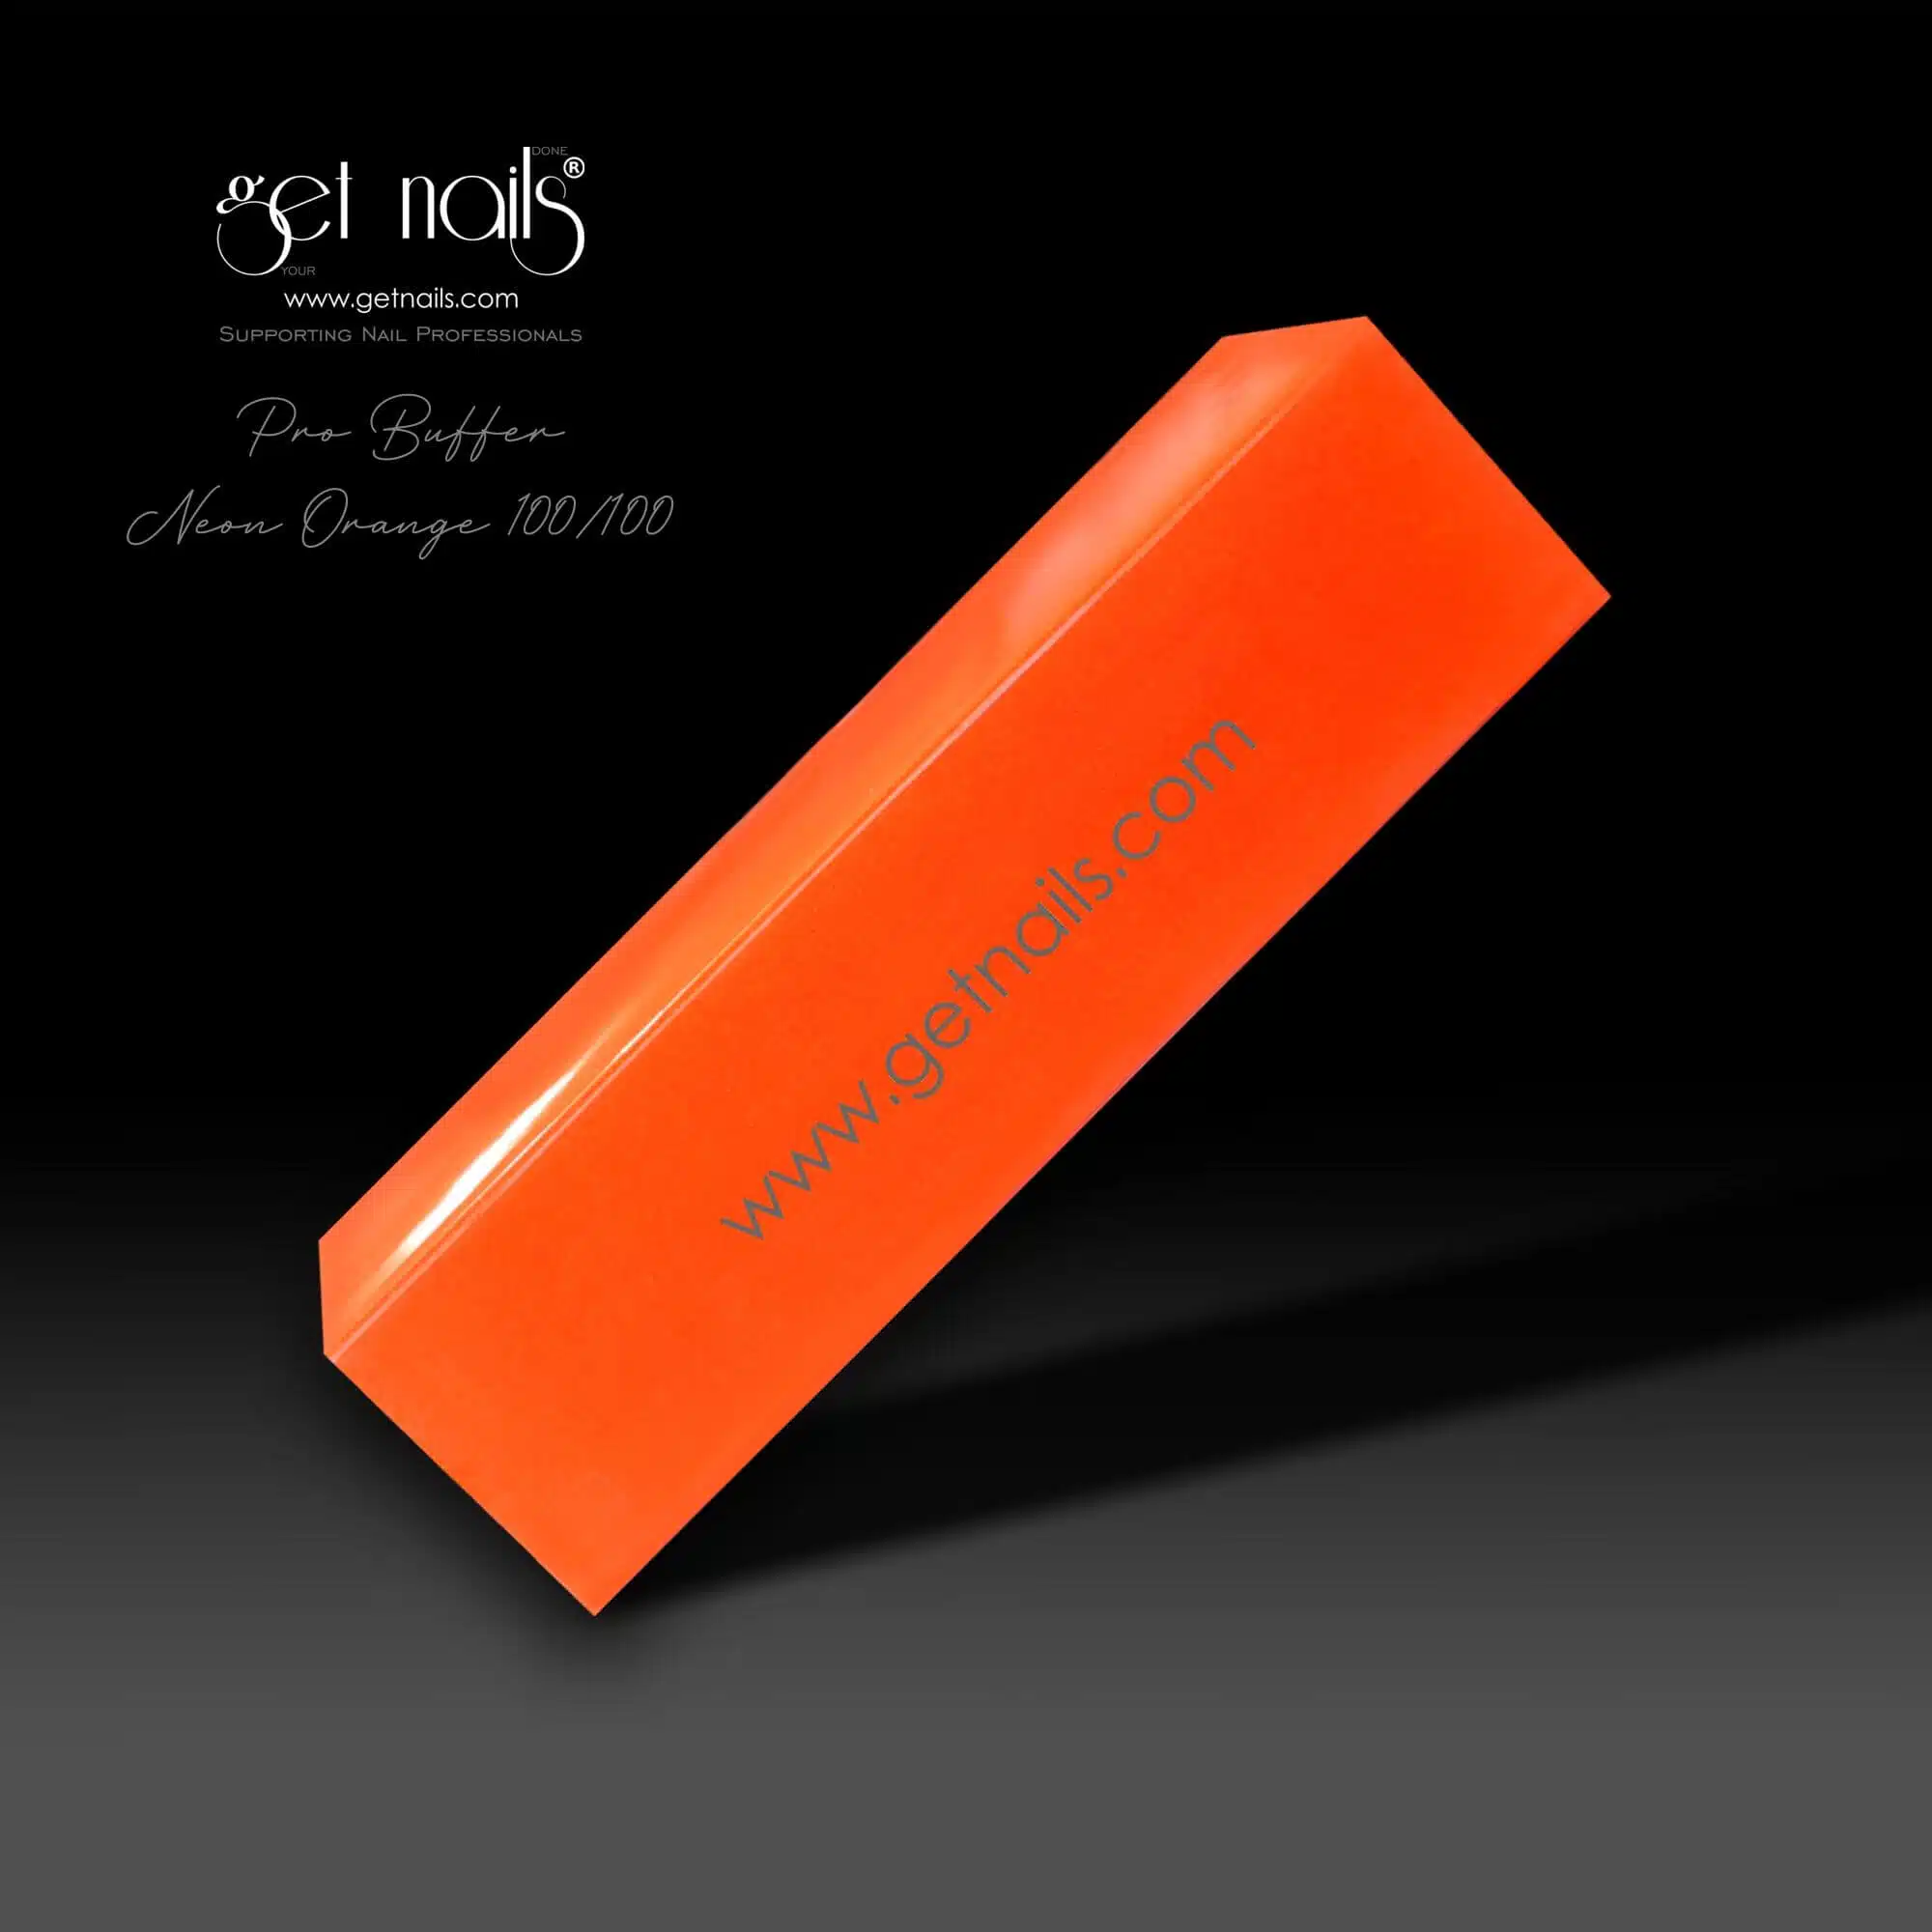 Get Nails Austria – Puffer Neon Orange 100/100